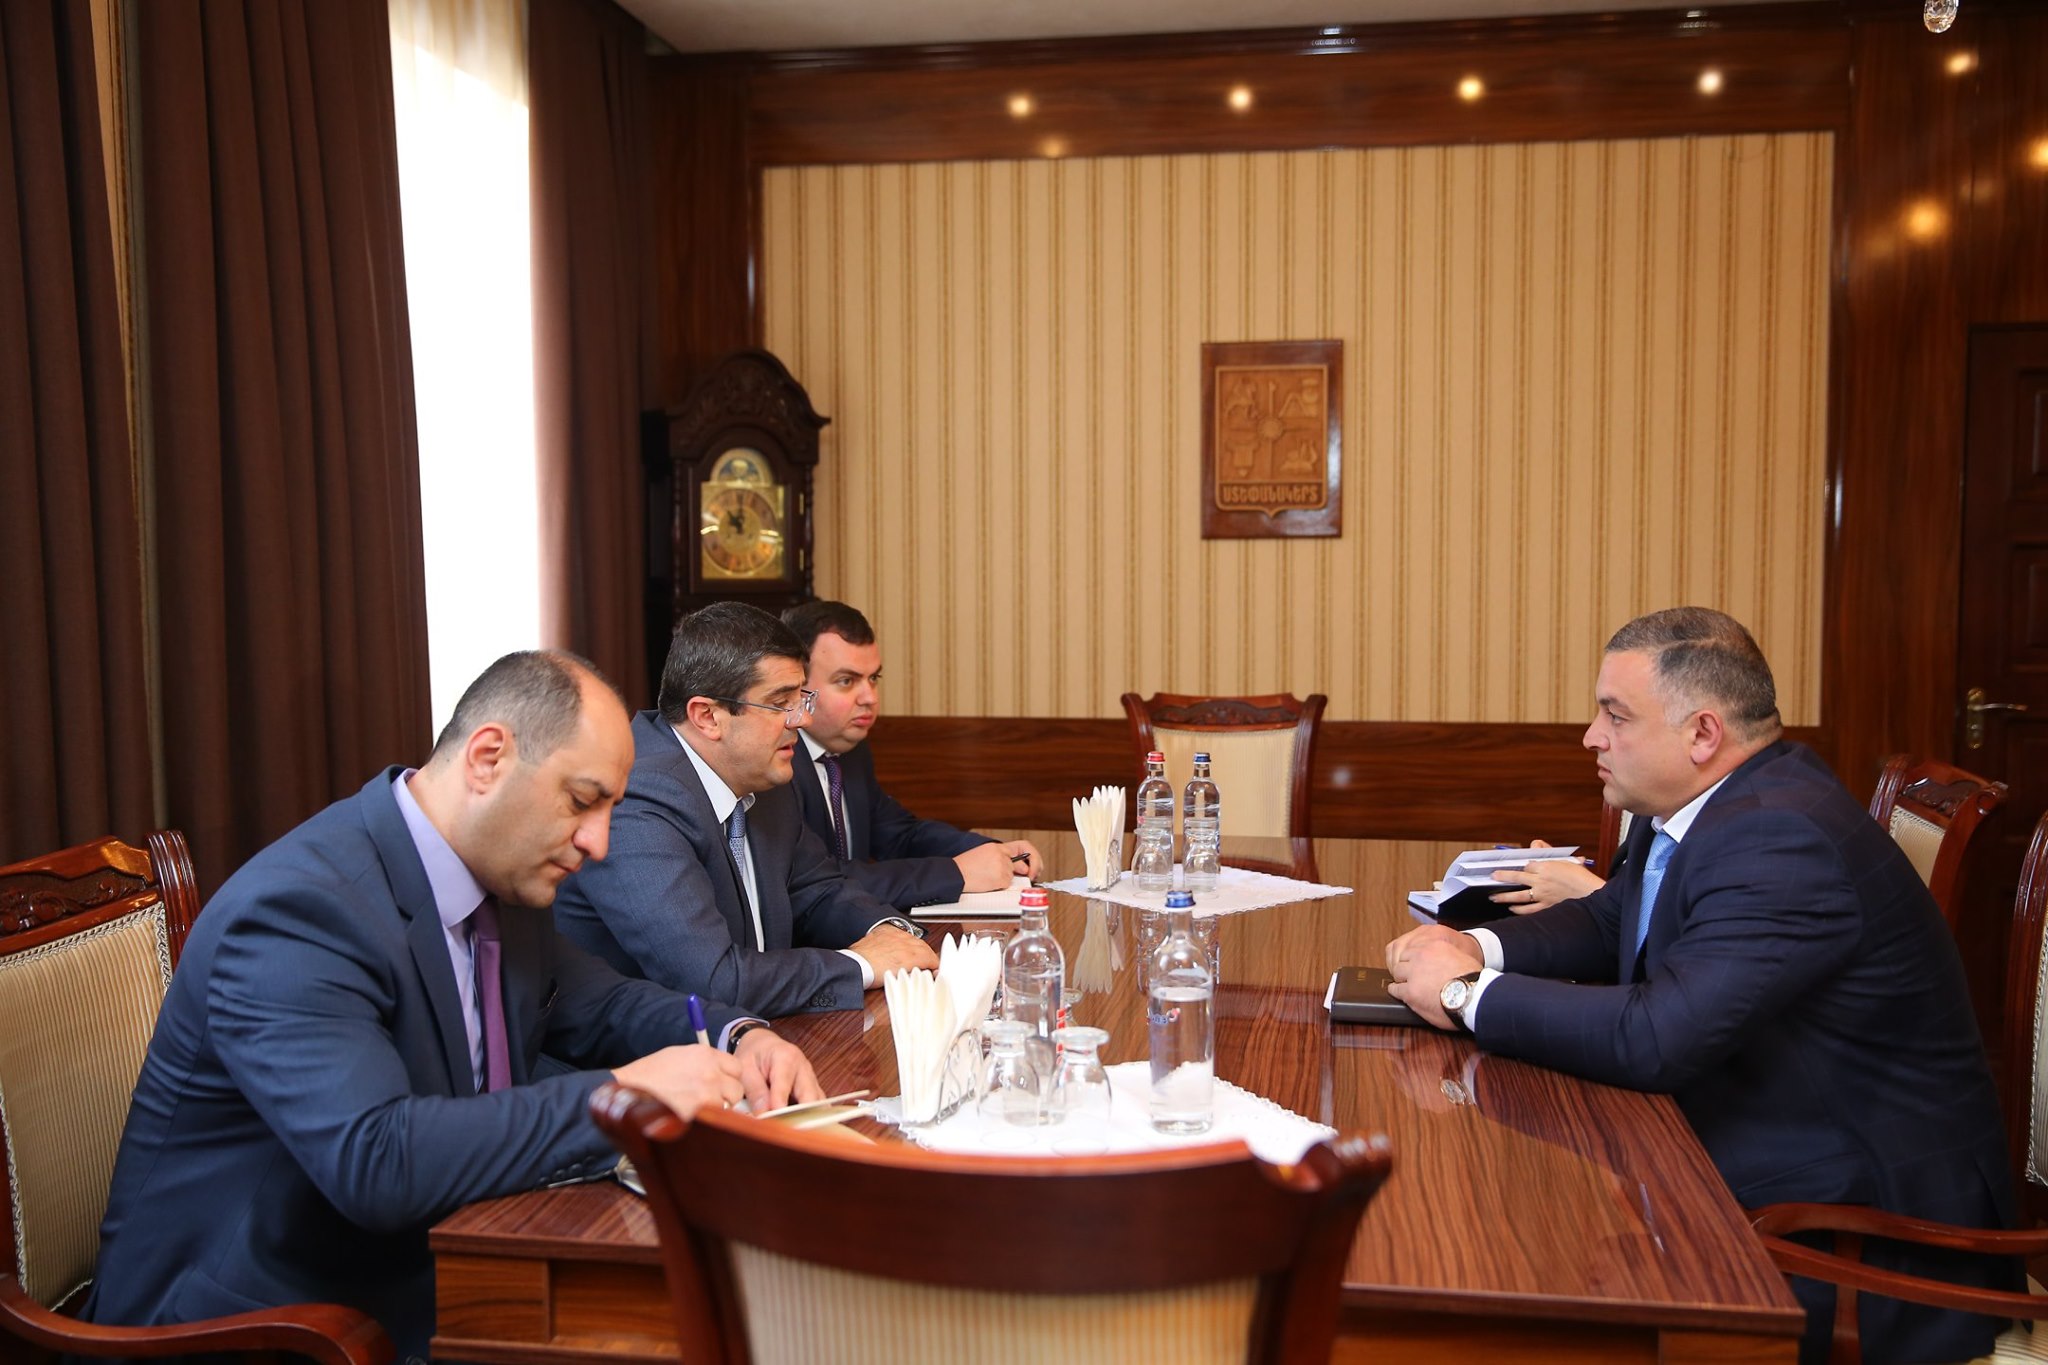 Араик Арутюнян и мэр Степанакерта обсудили программы развития столицы